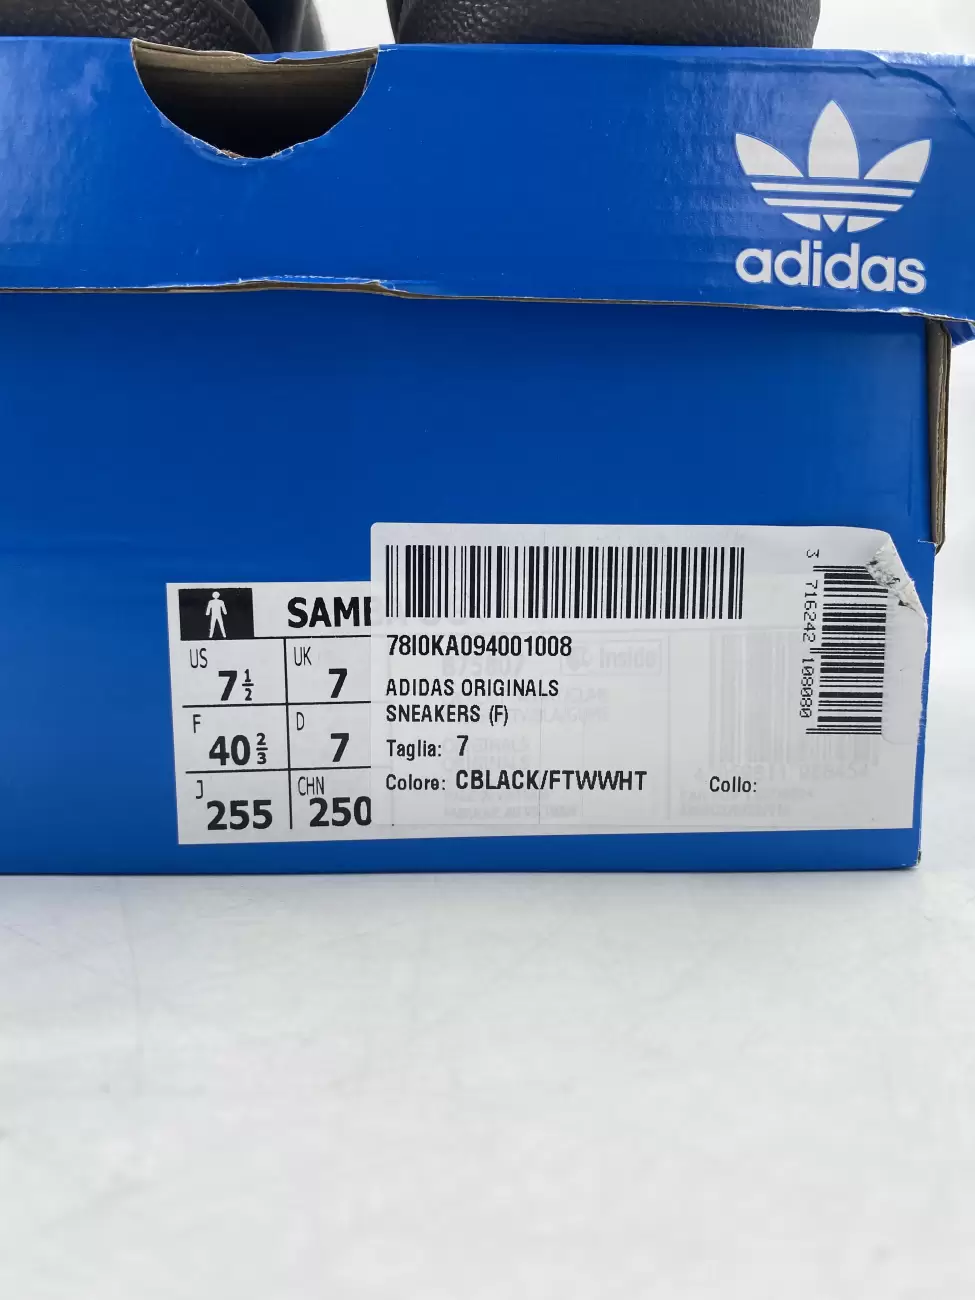 41139 - Adidas Samba OG Black White Gum | Item Details - AfterMarket